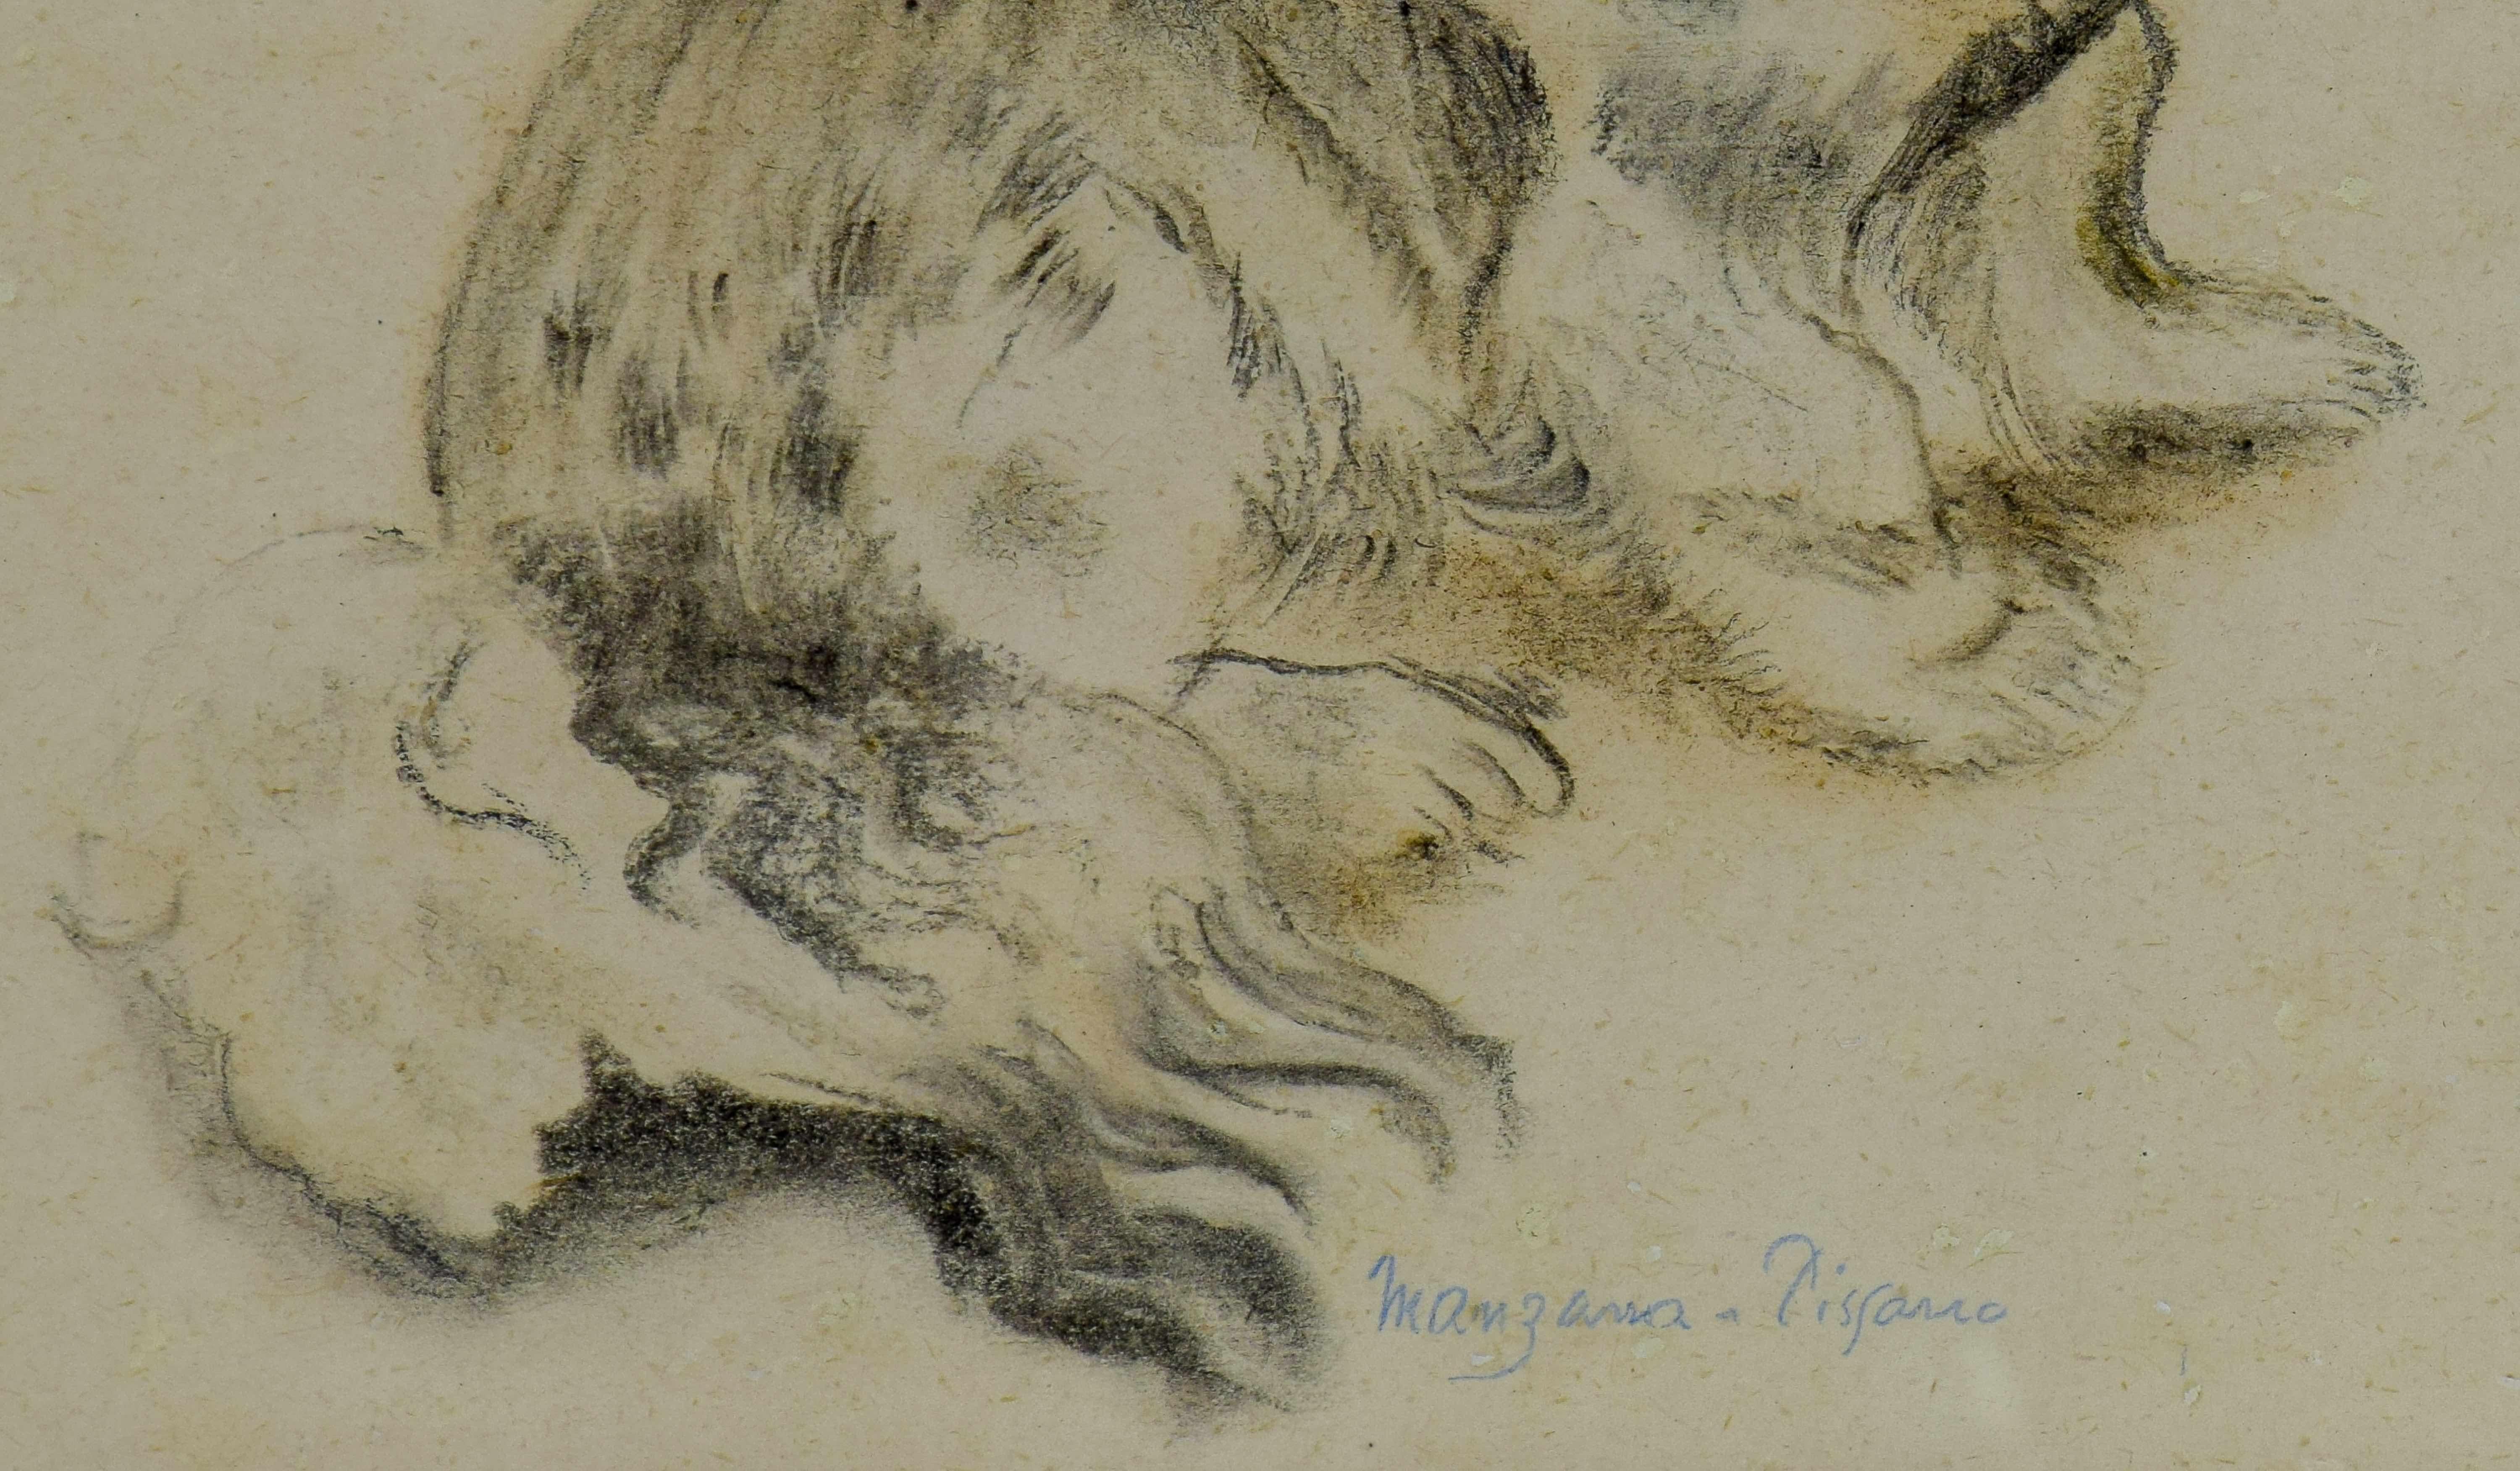 Pekinger (Le Pkinois), Zeichnung eines Hundes von Georges Manzana Pissarro (Post-Impressionismus), Painting, von Georges Henri Manzana Pissarro